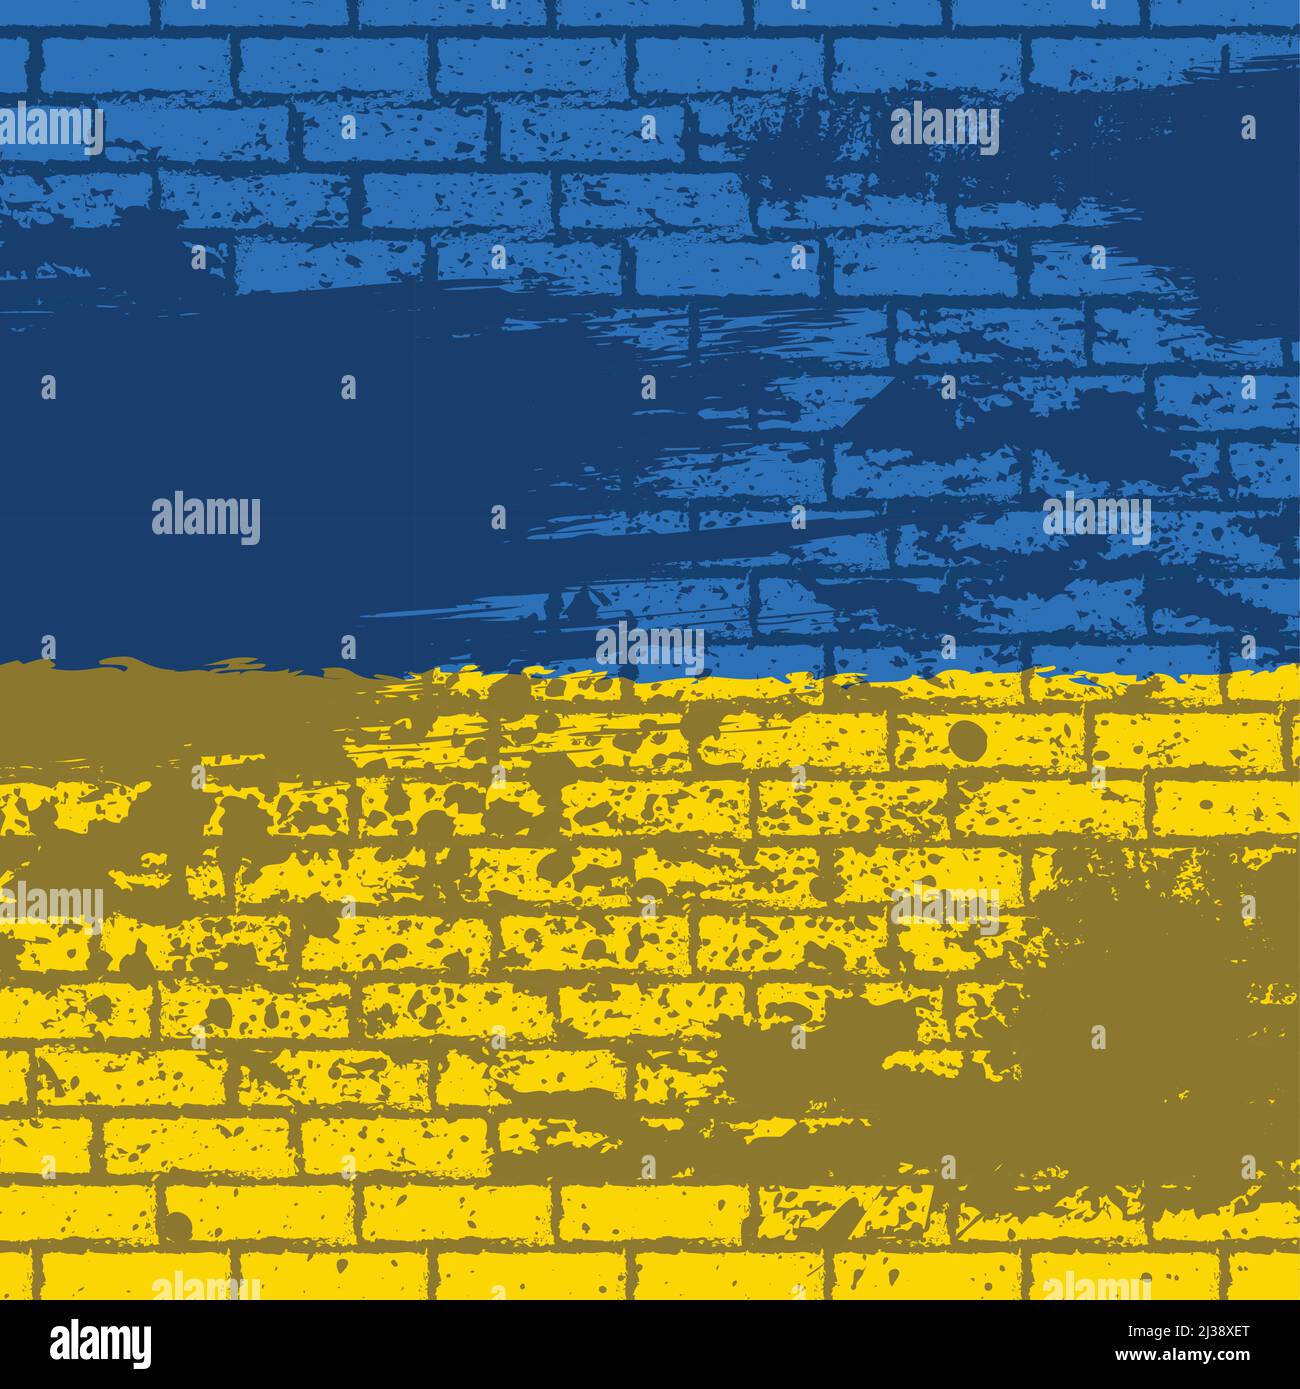 Le drapeau ukrainien grunge mur de briques Illustration de Vecteur